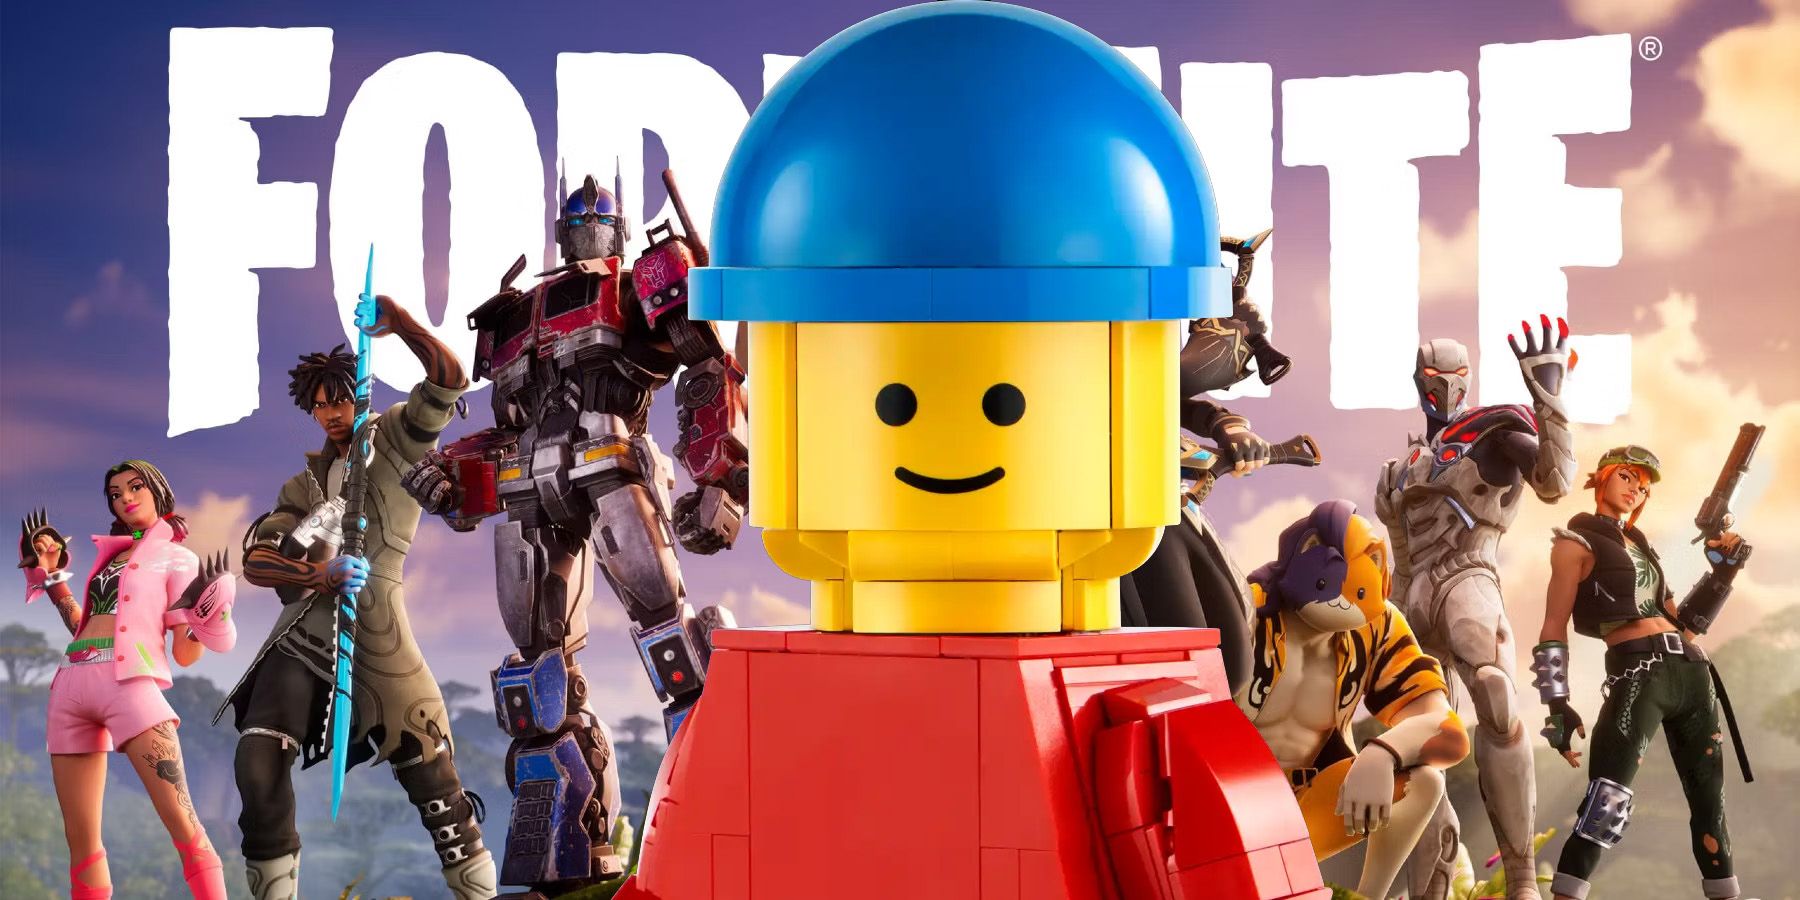 Como acessar e jogar o novo LEGO Fortnite